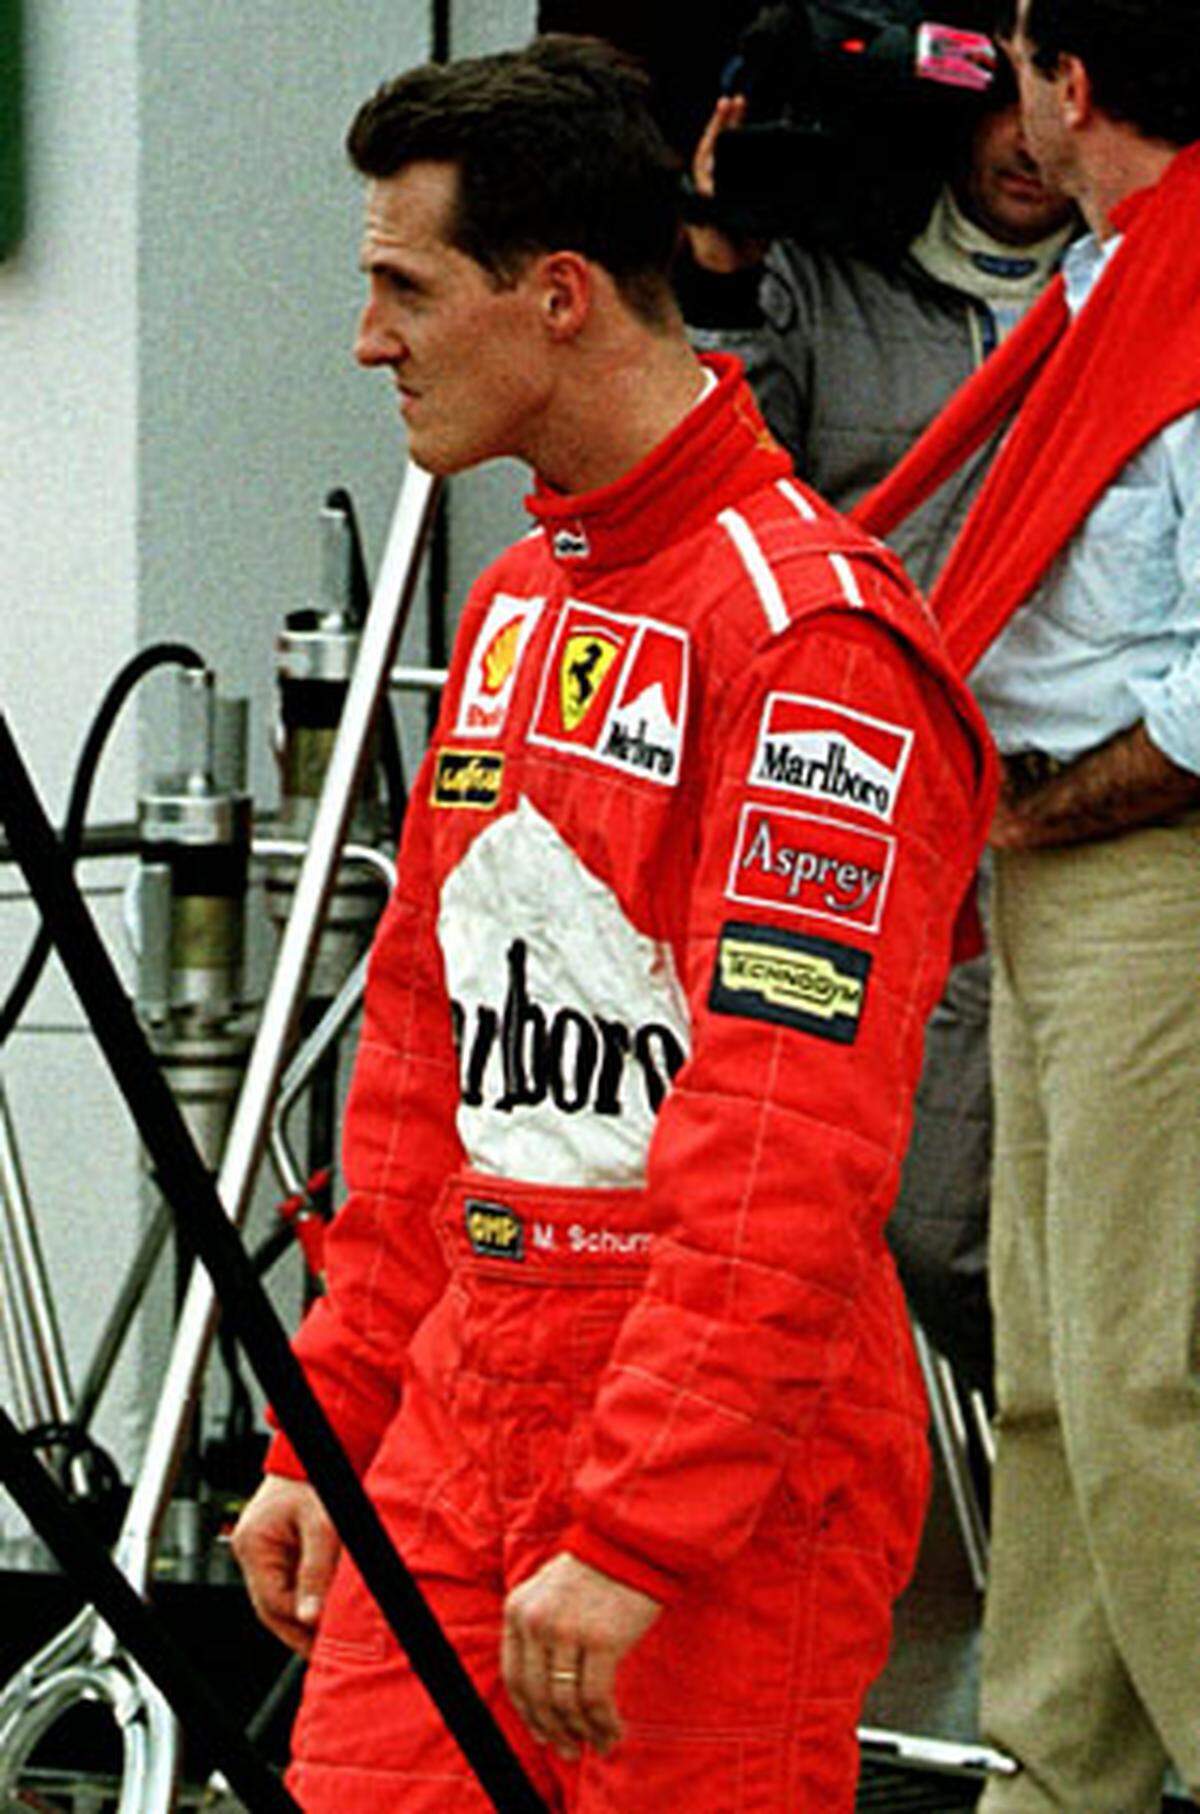 Unrühmliches Saisonfinale: Das Titelrennen endet in Jerez, als Schumacher seinem Konkurrenten Jacques Villeneuve (Williams-Renault) in die Seite fährt. Villeneuve kann im Gegensatz zu Schumacher weiterfahren und holt den Titel. Der Kerpener wird wegen Unsportlichkeit aus der WM-Wertung gestrichen.